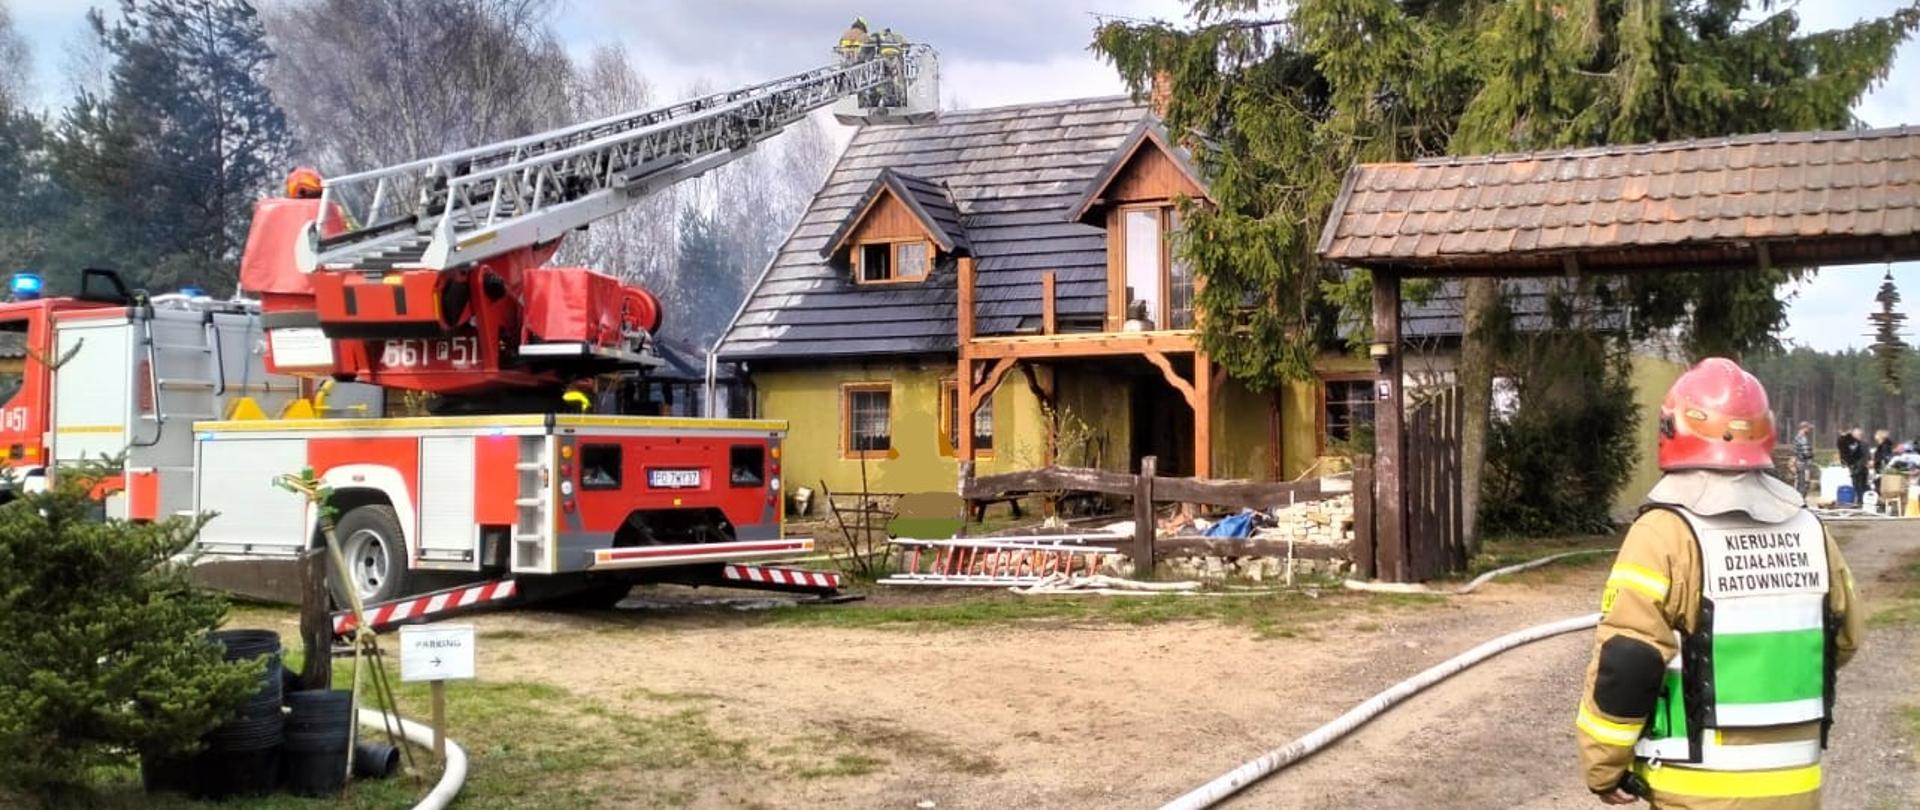 Na zdjęciu widoczny jest budynek oraz strażaki i drabina strażacka